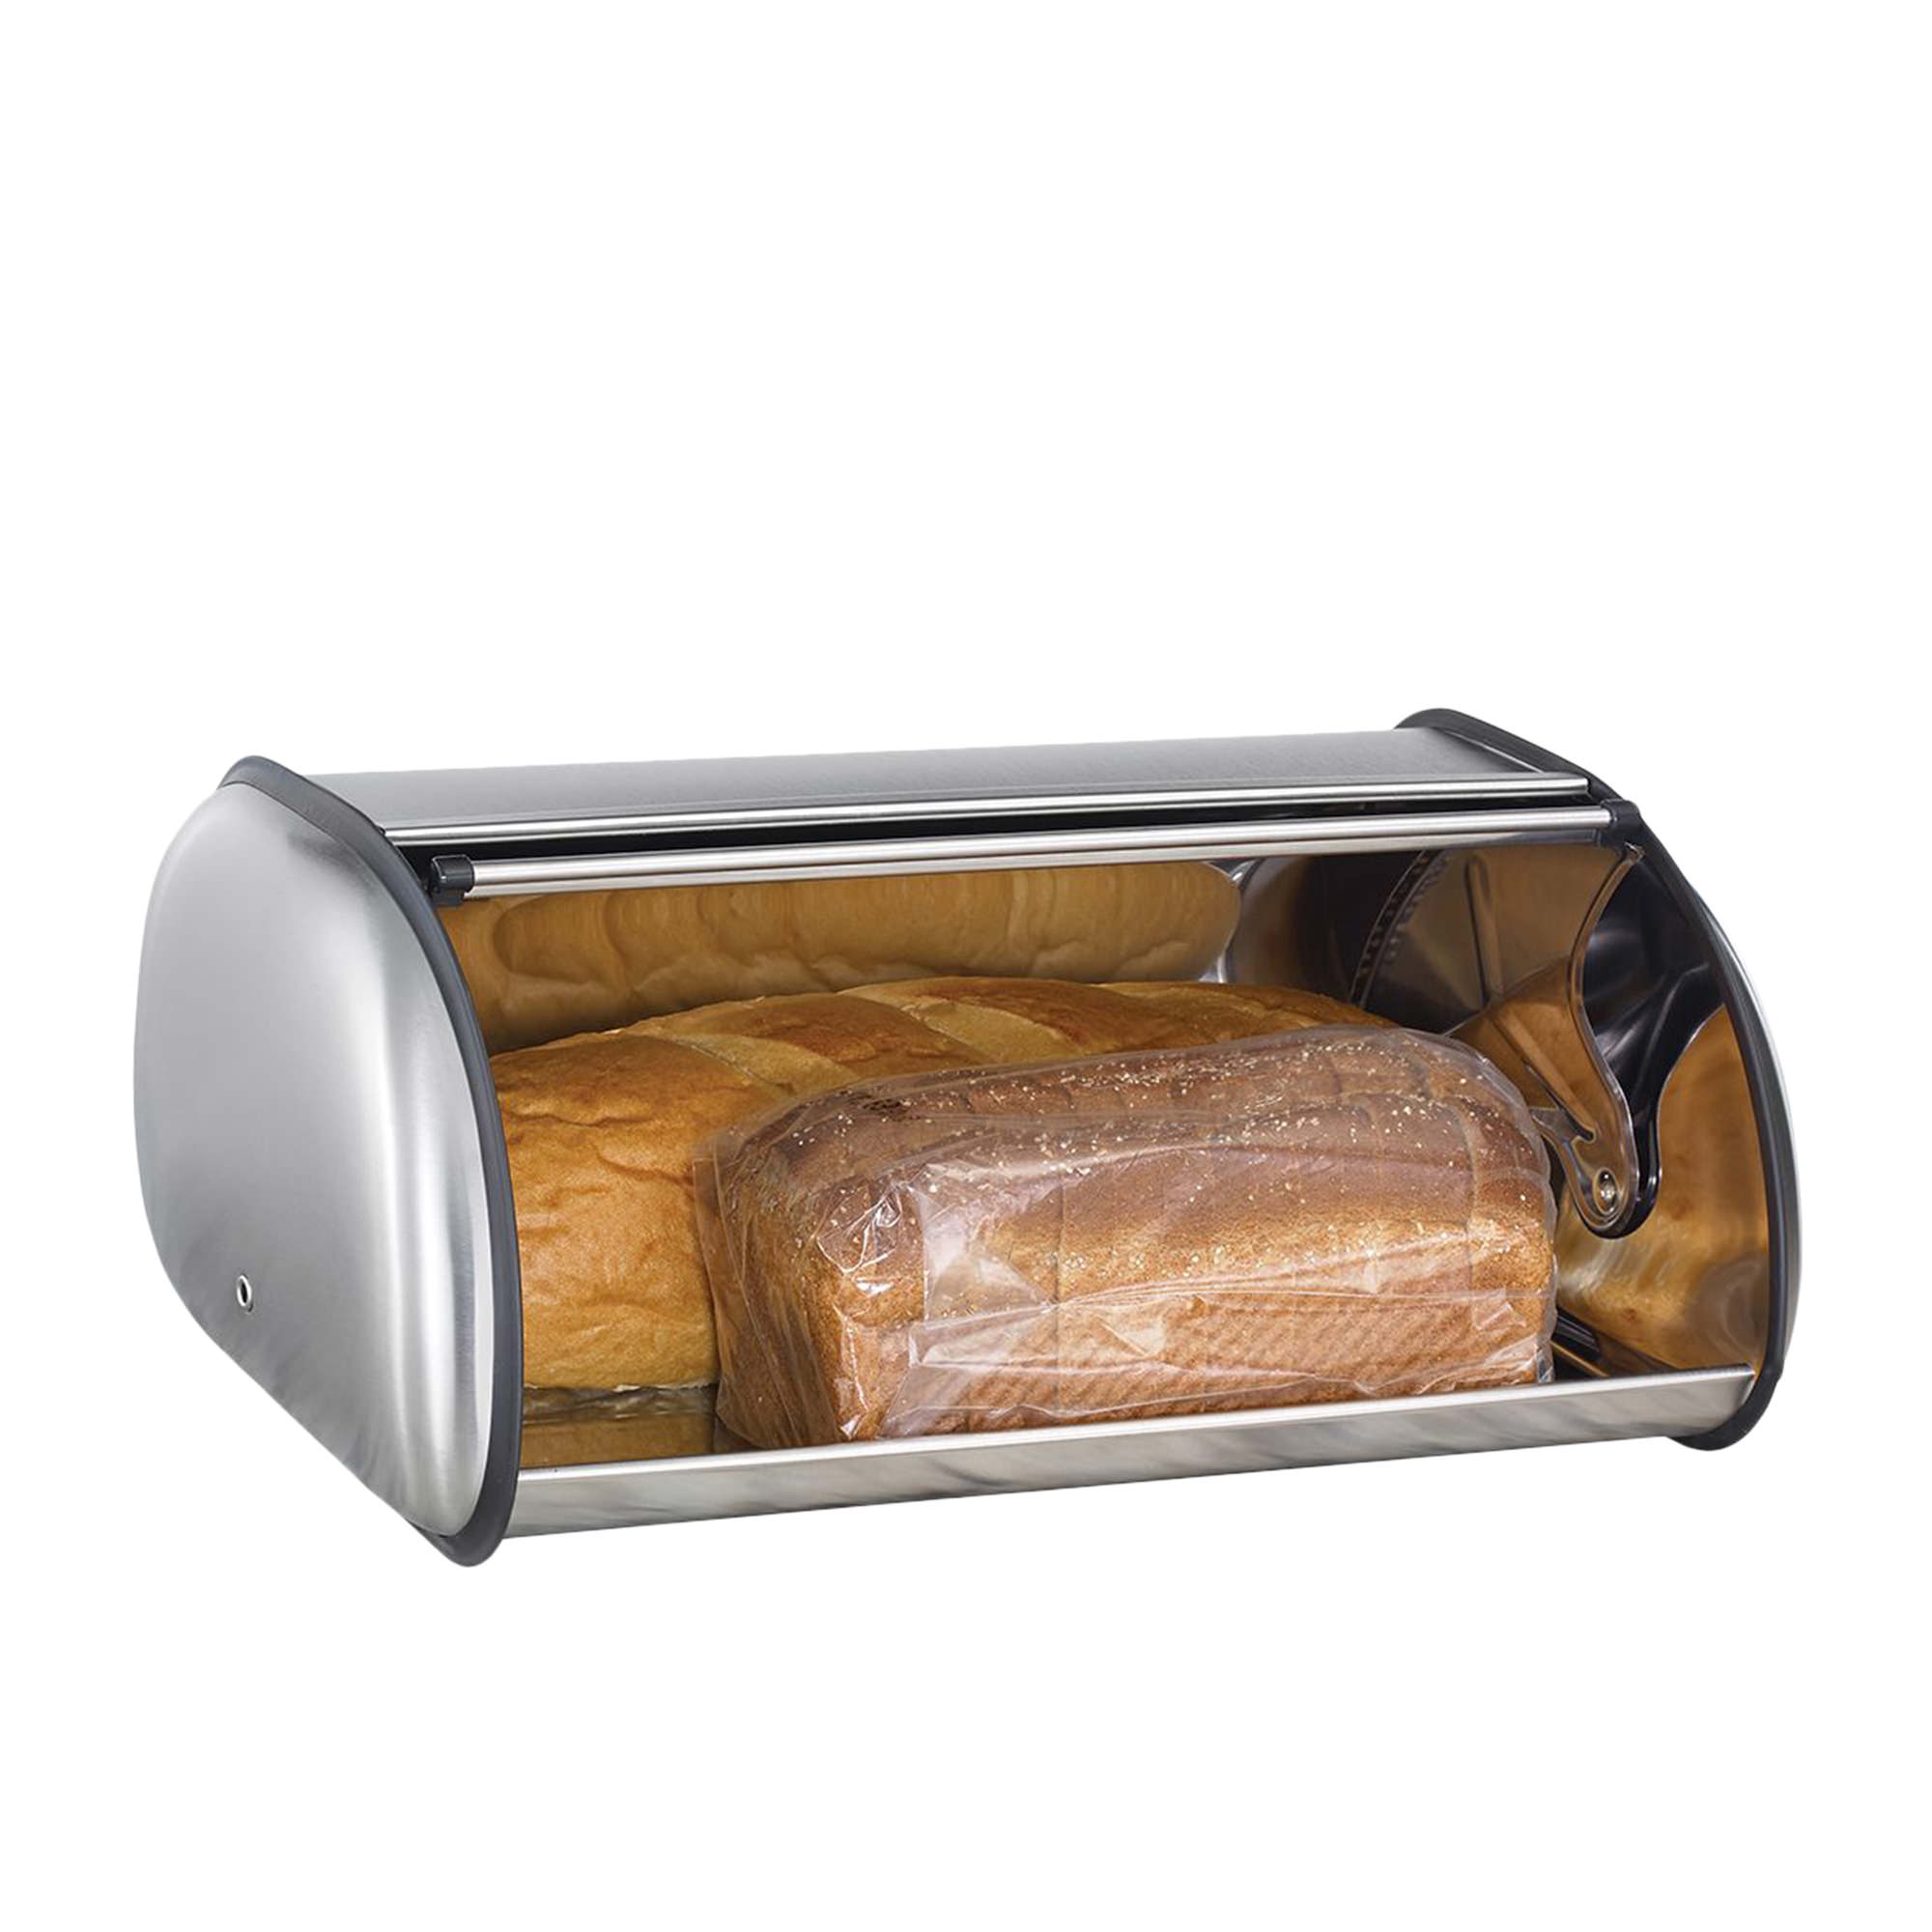 Polder Deluxe Roll Top Bread Bin Nickel Image 2